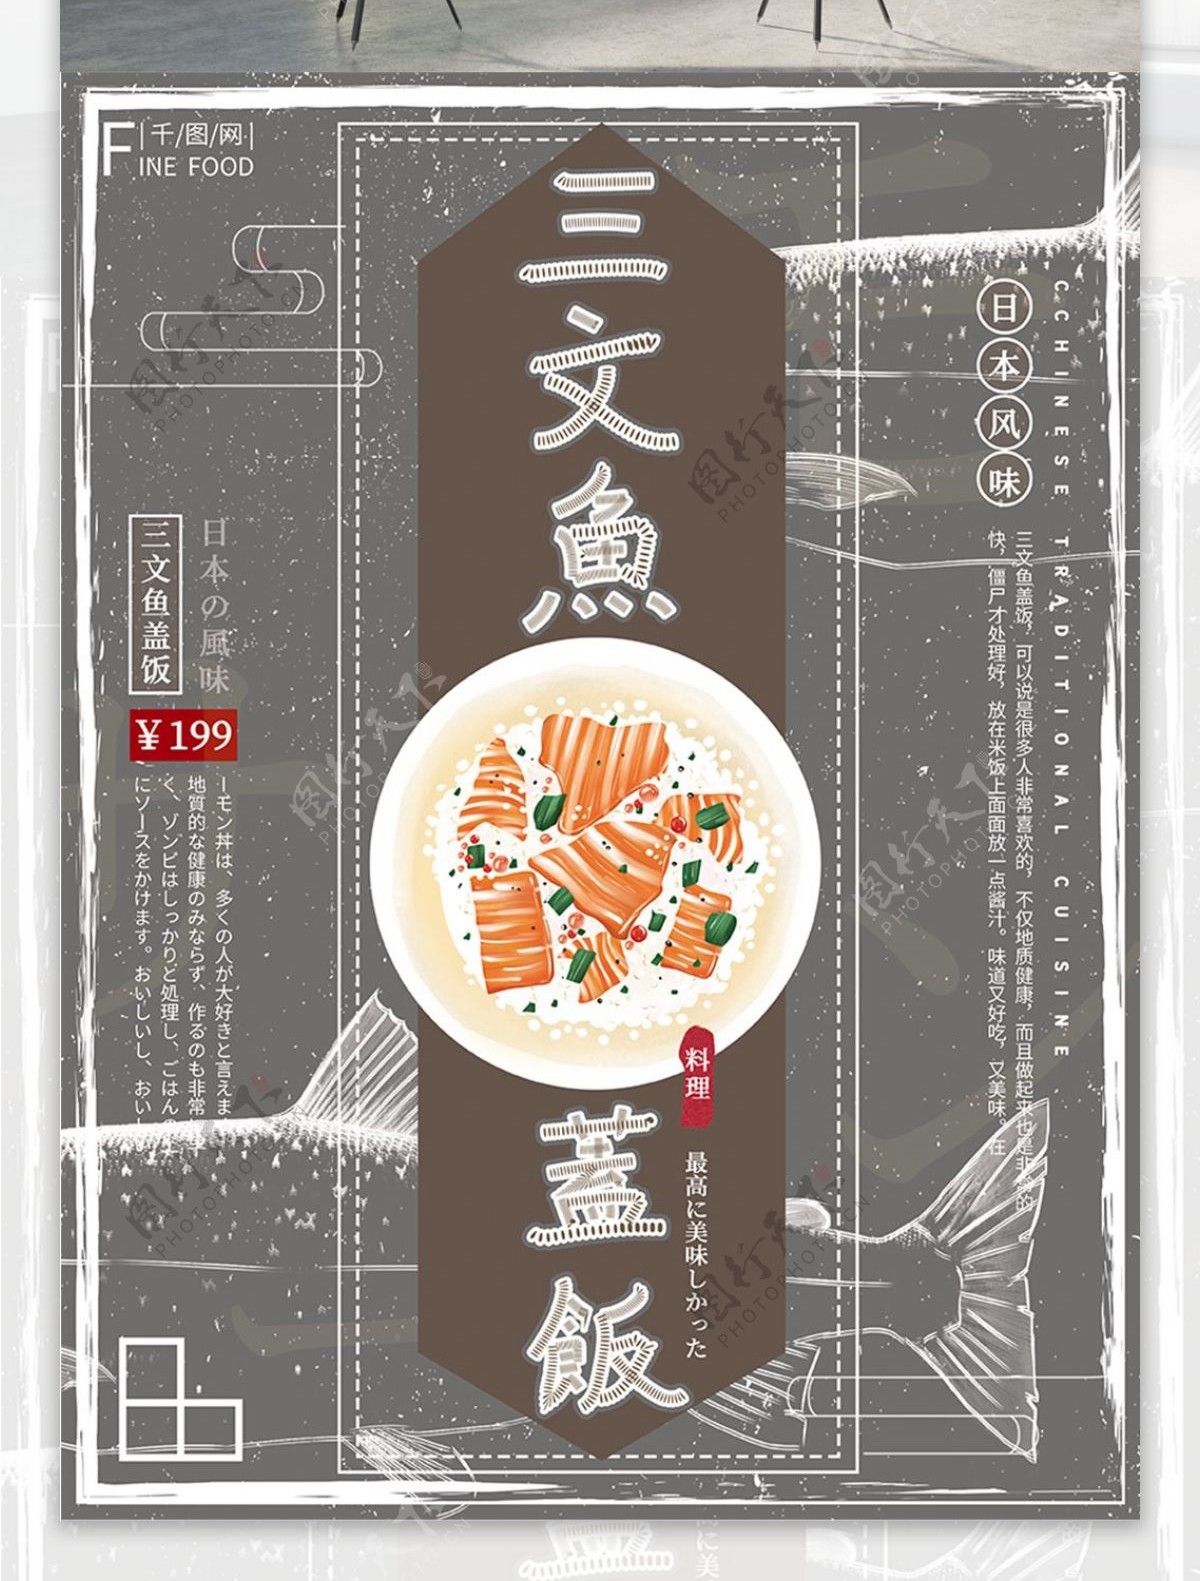 原创手绘日本美食三文鱼盖饭美食旅游海报